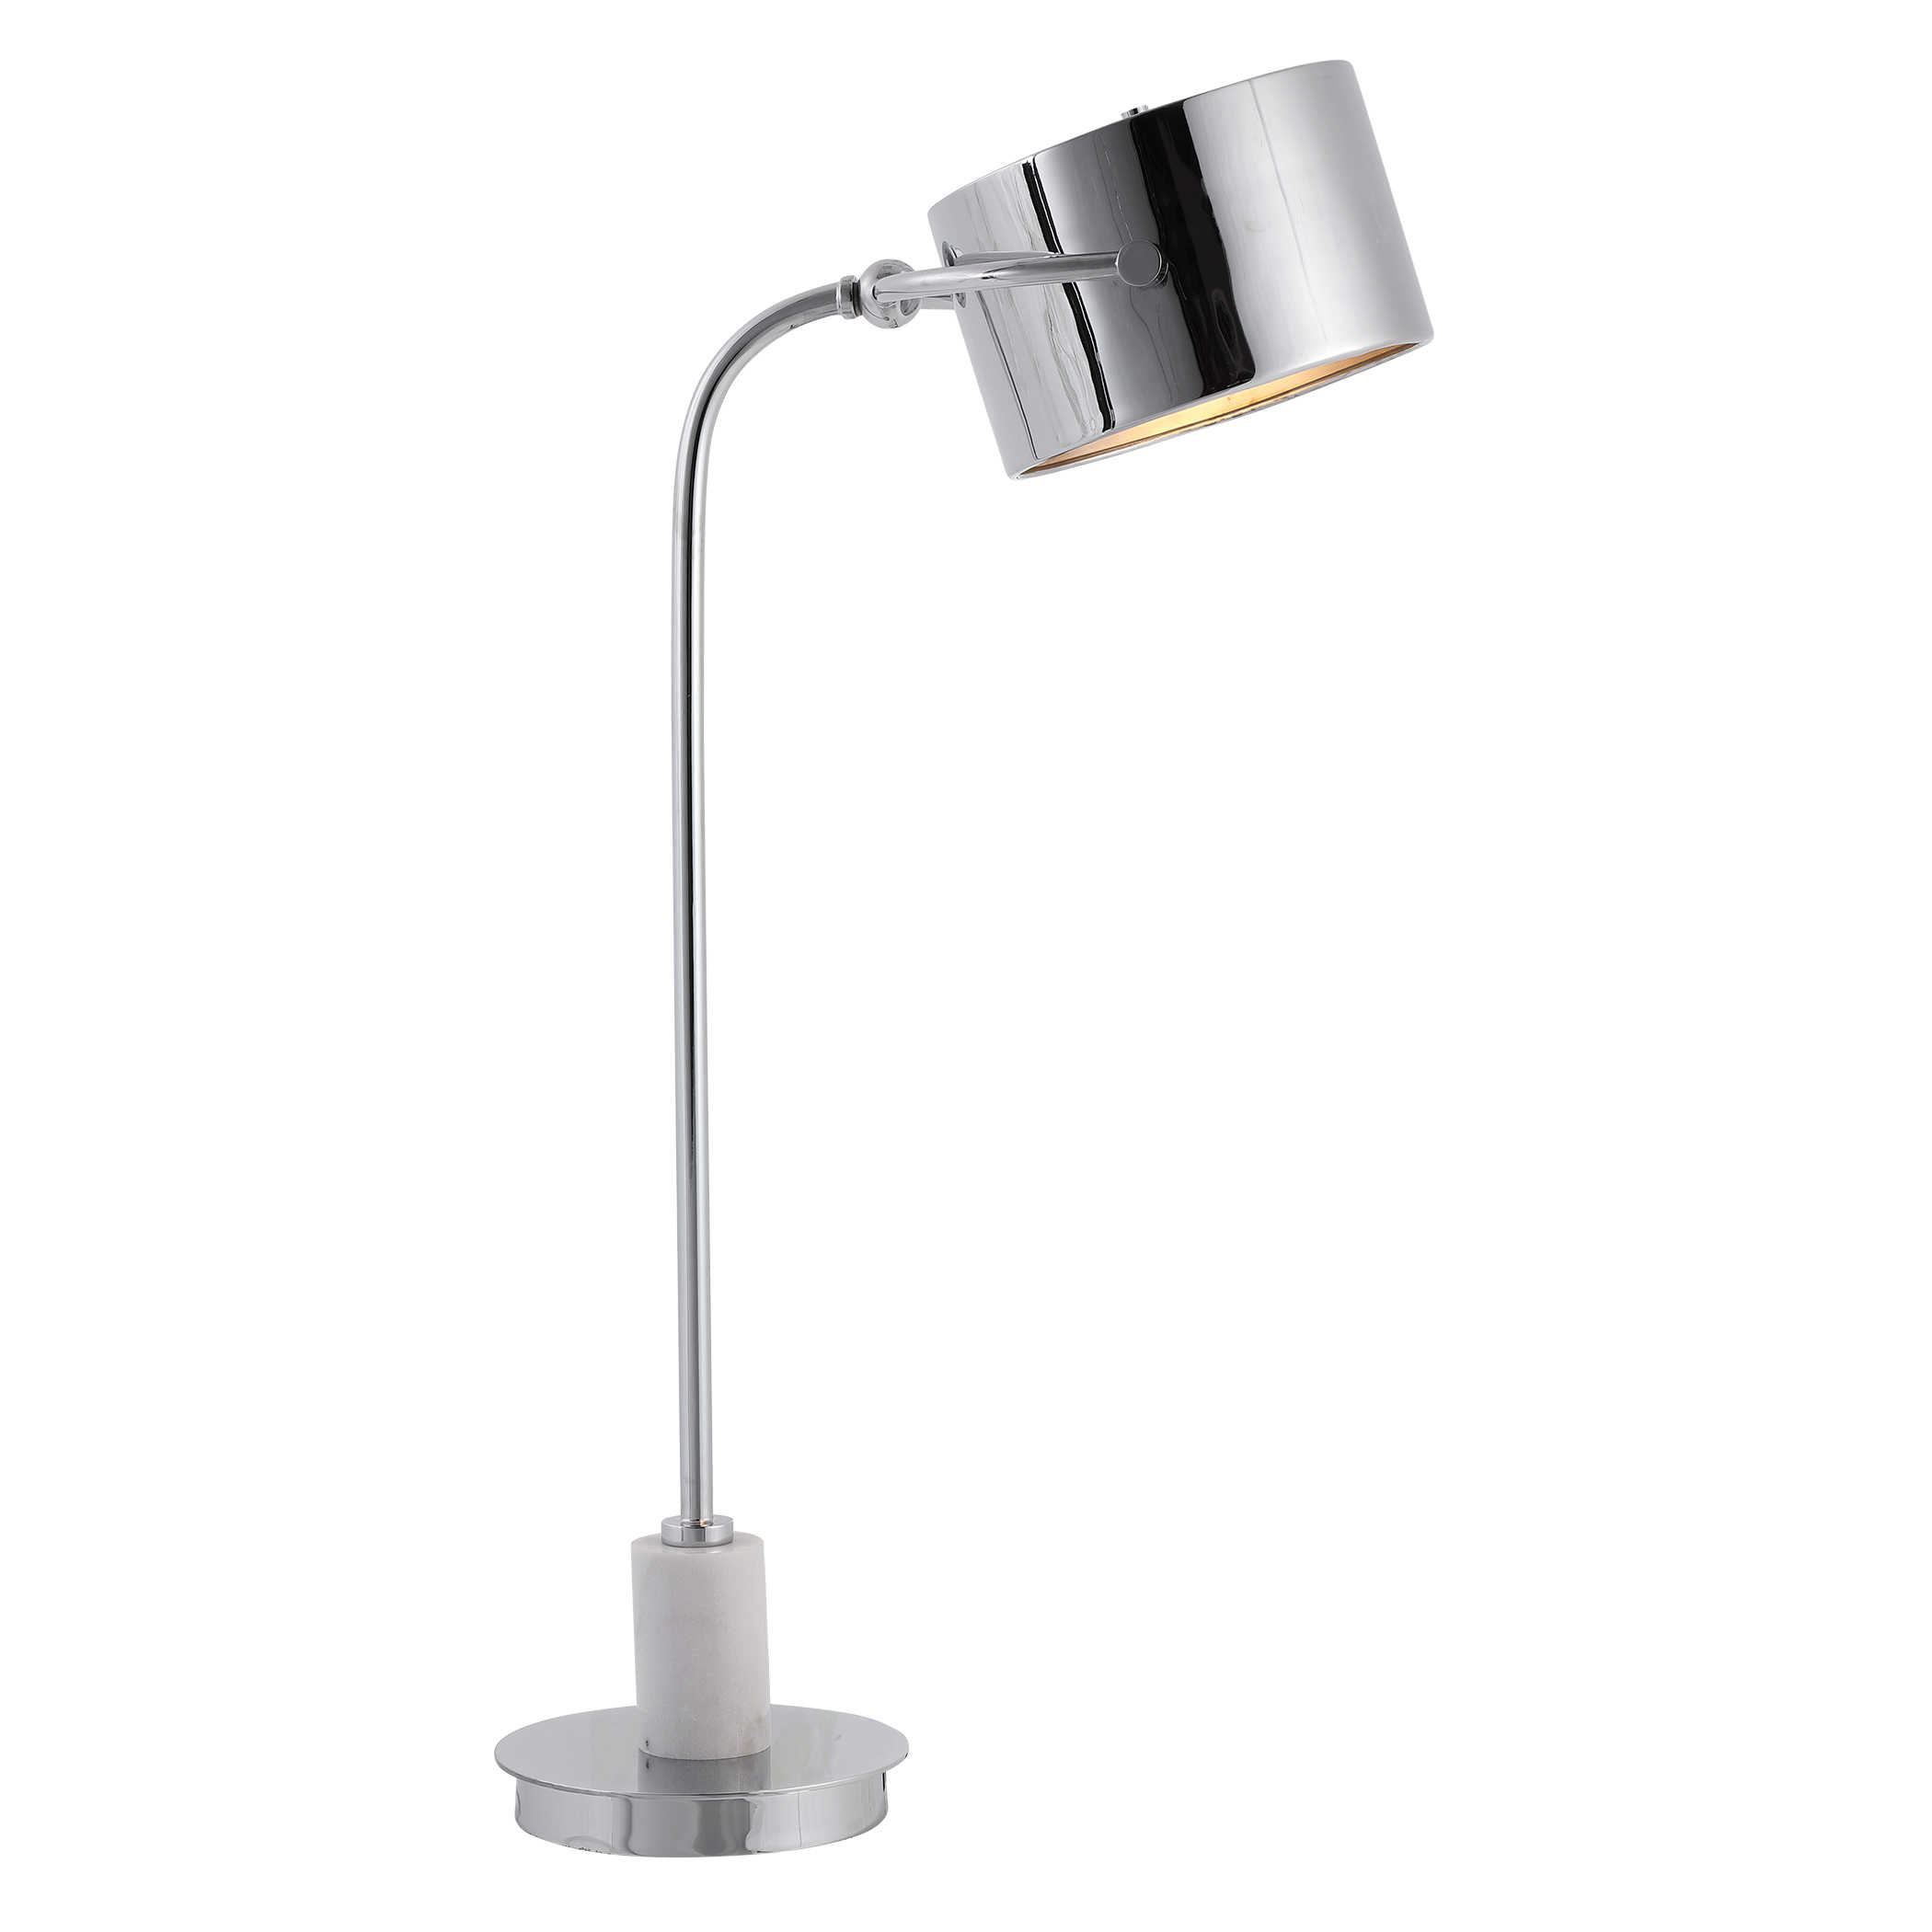 Настольная лампа MENDEL DESK LAMP 29785-1 Uttermost США